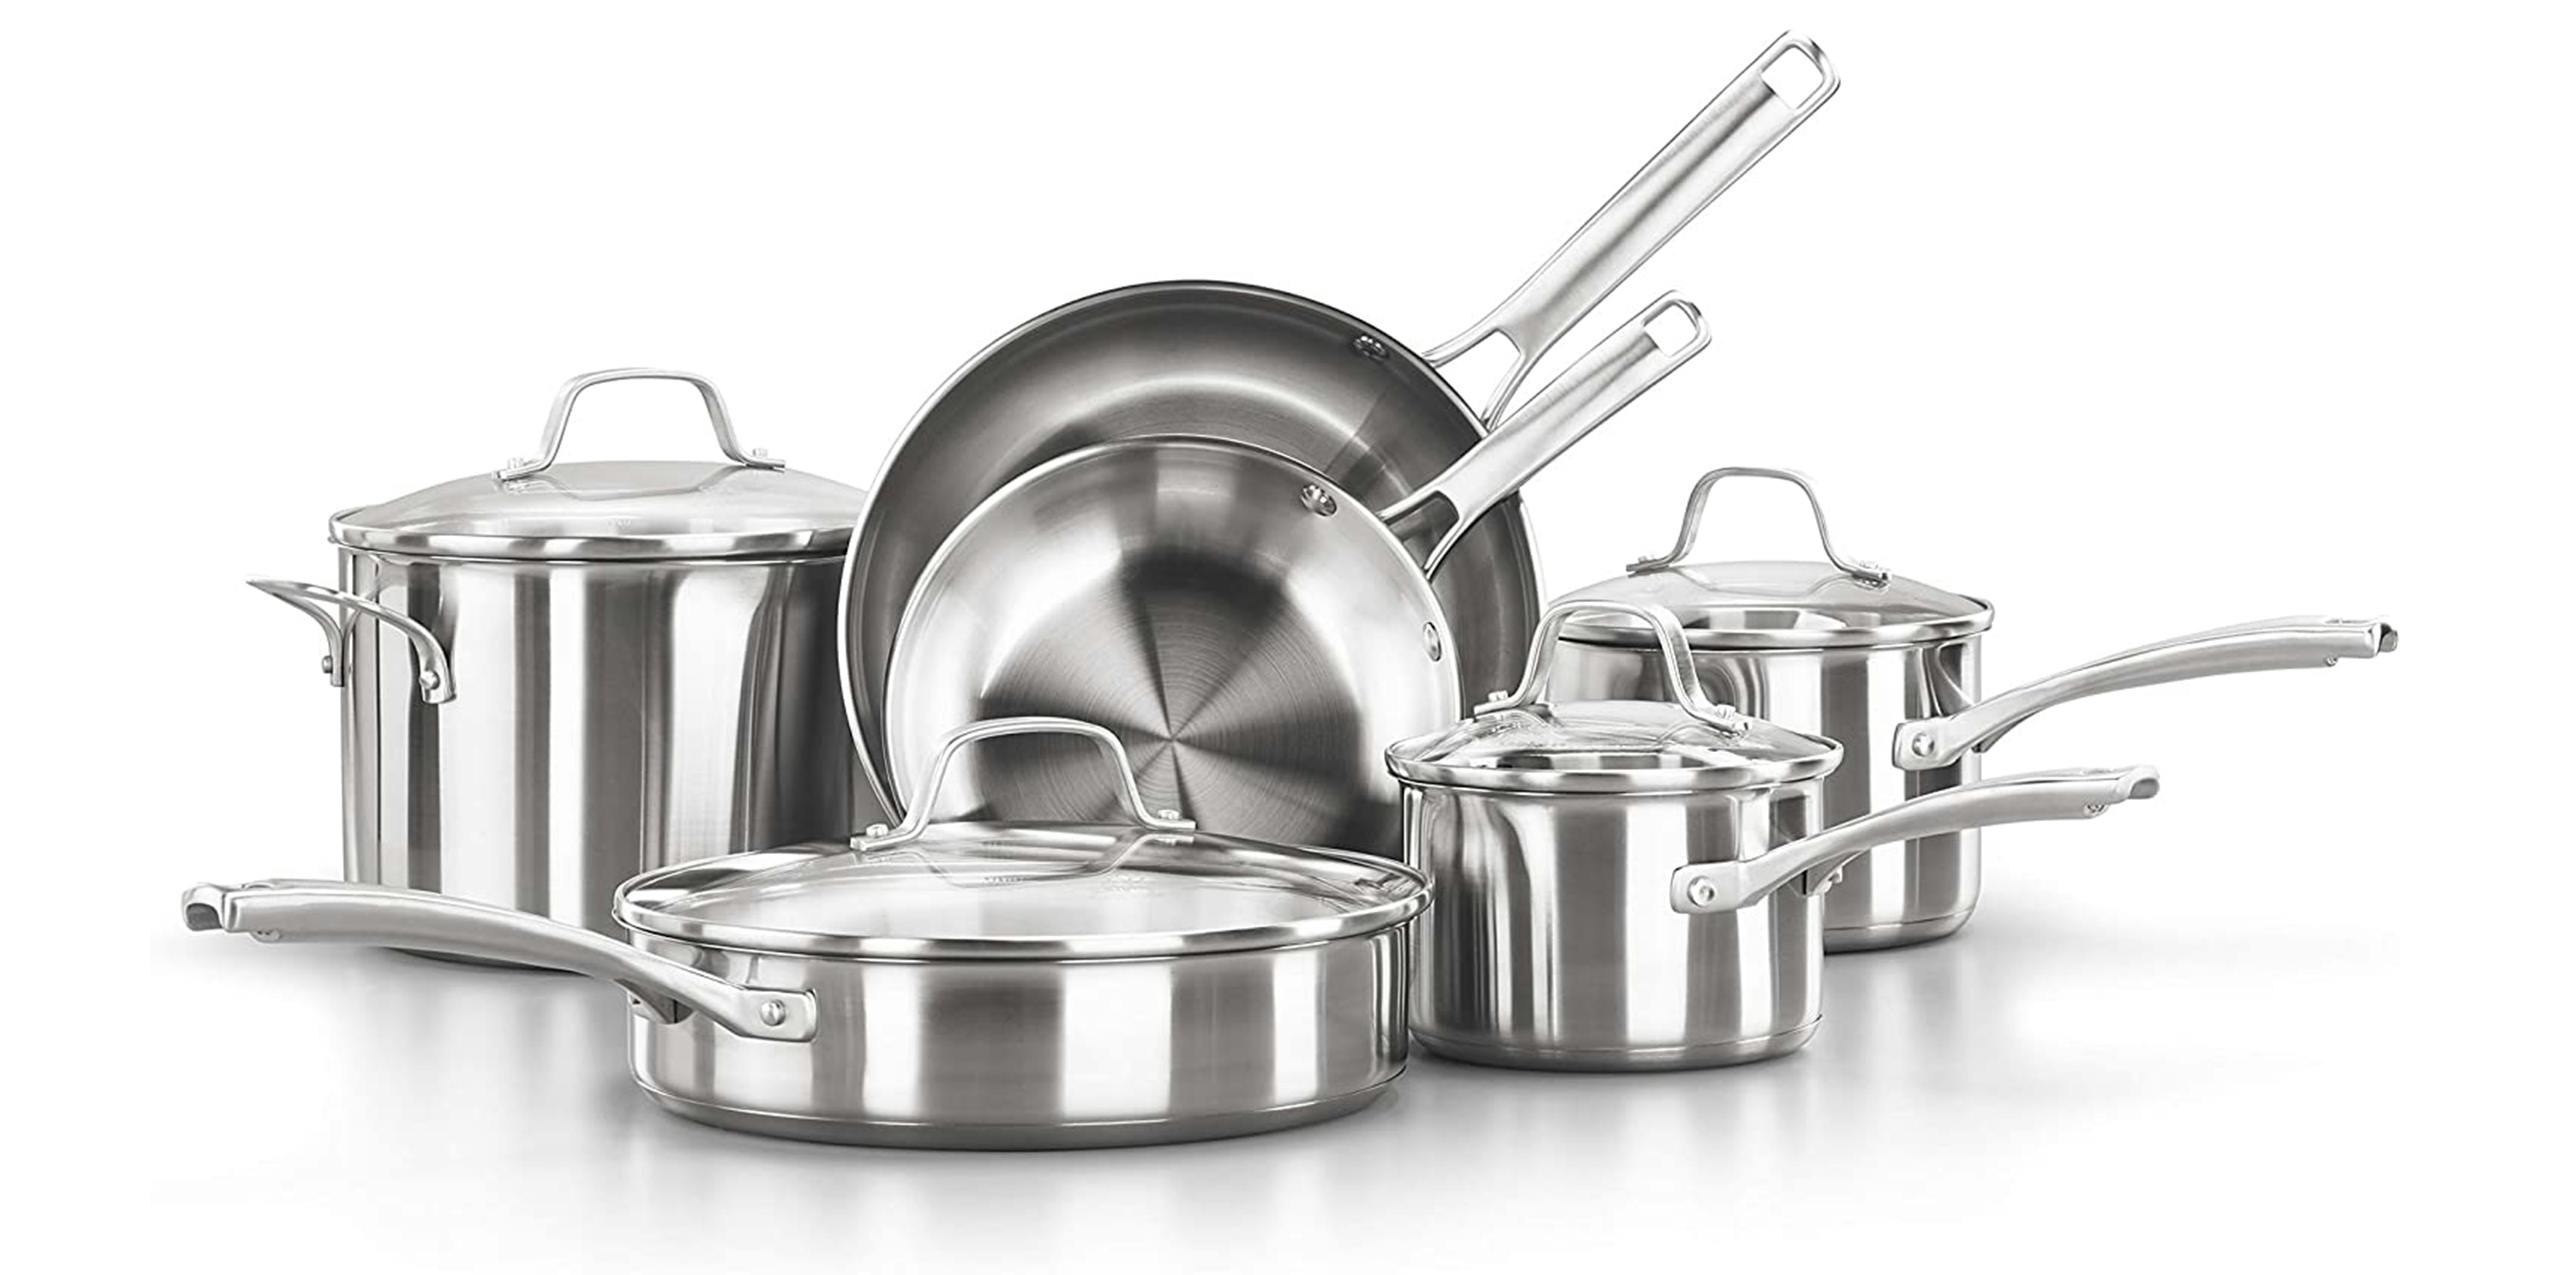 An 11-piece Calphalon stainless steel cookware set.